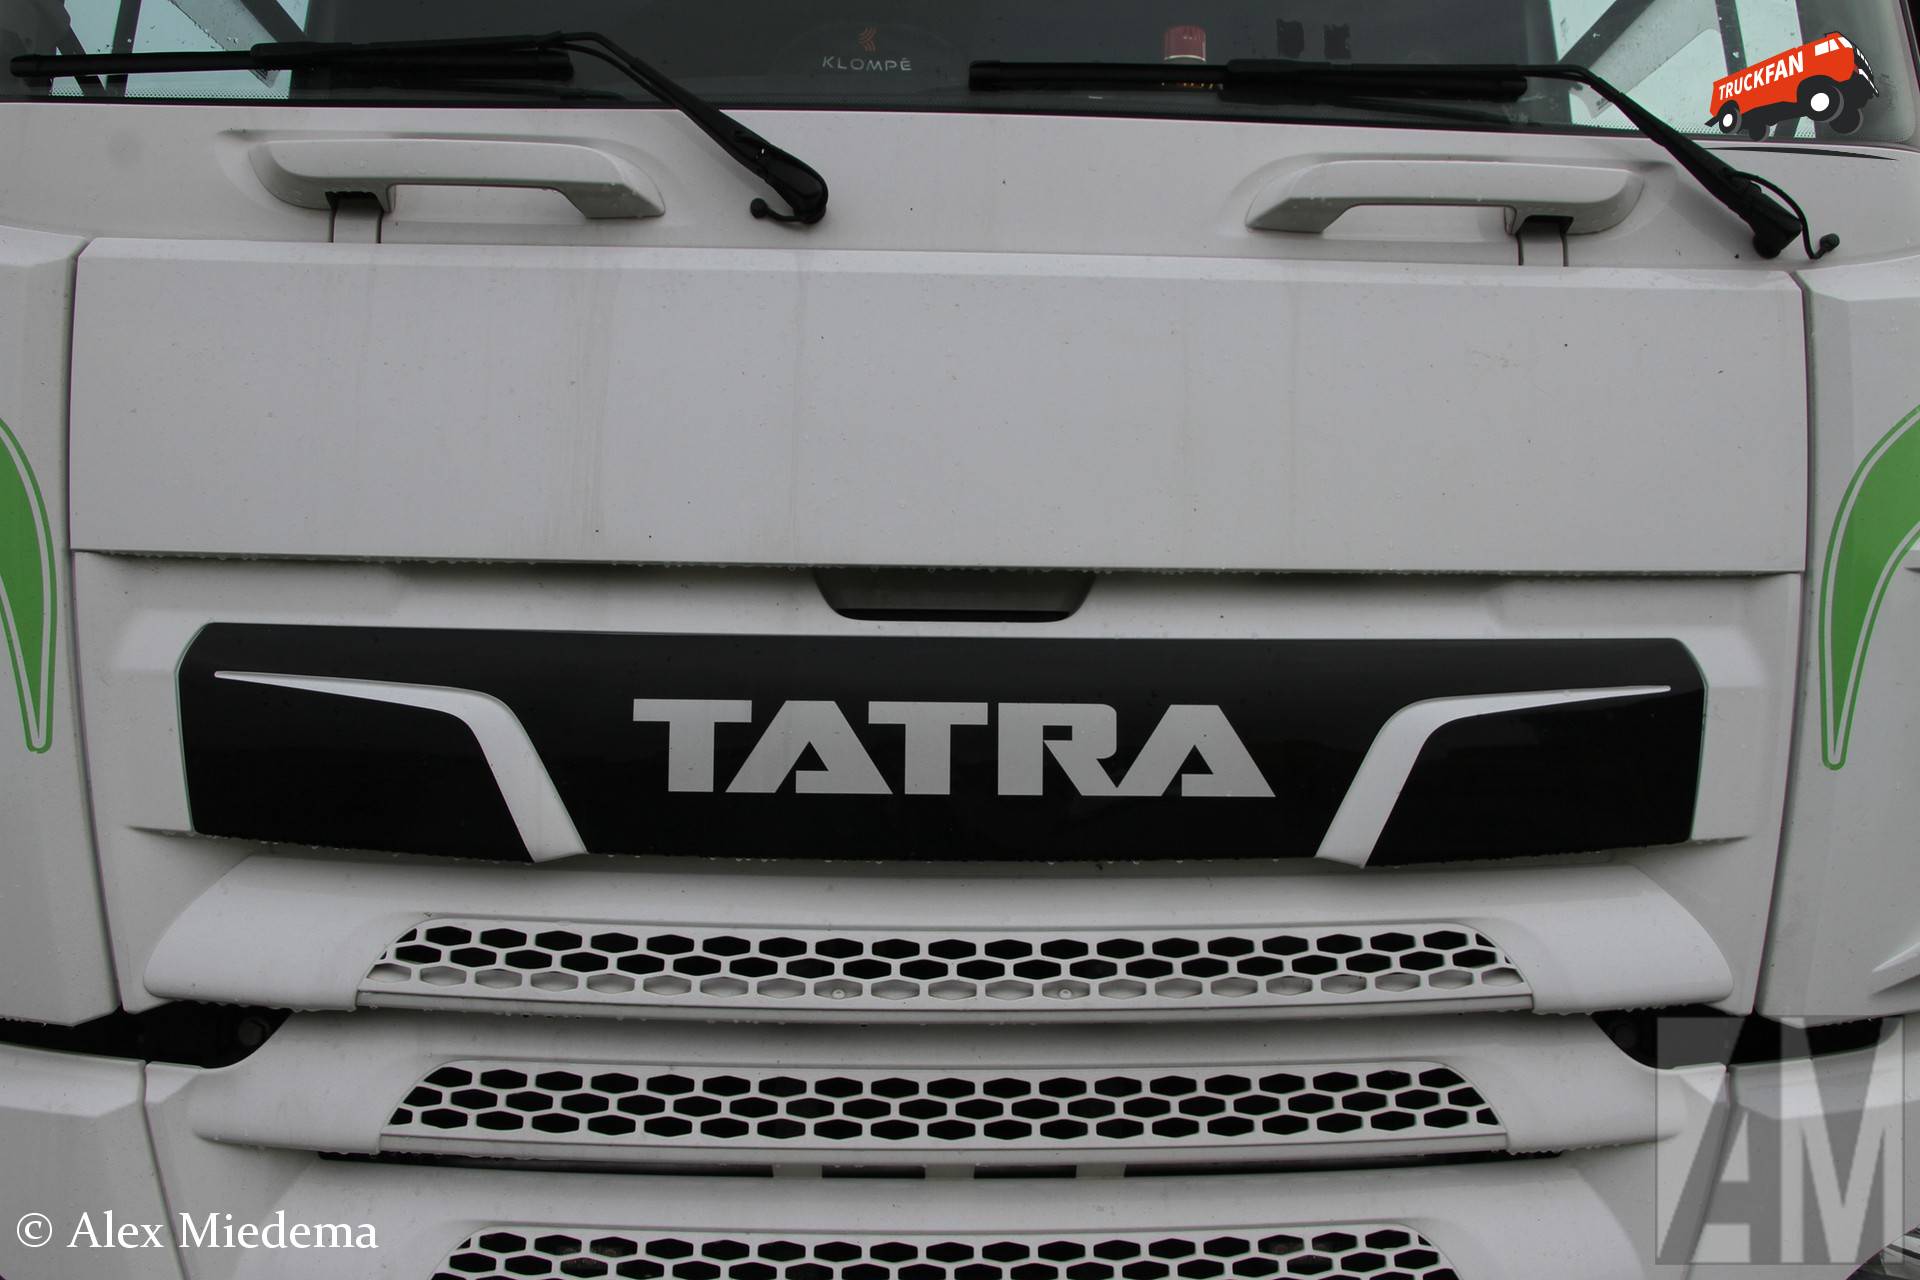 Tatra Phoenix